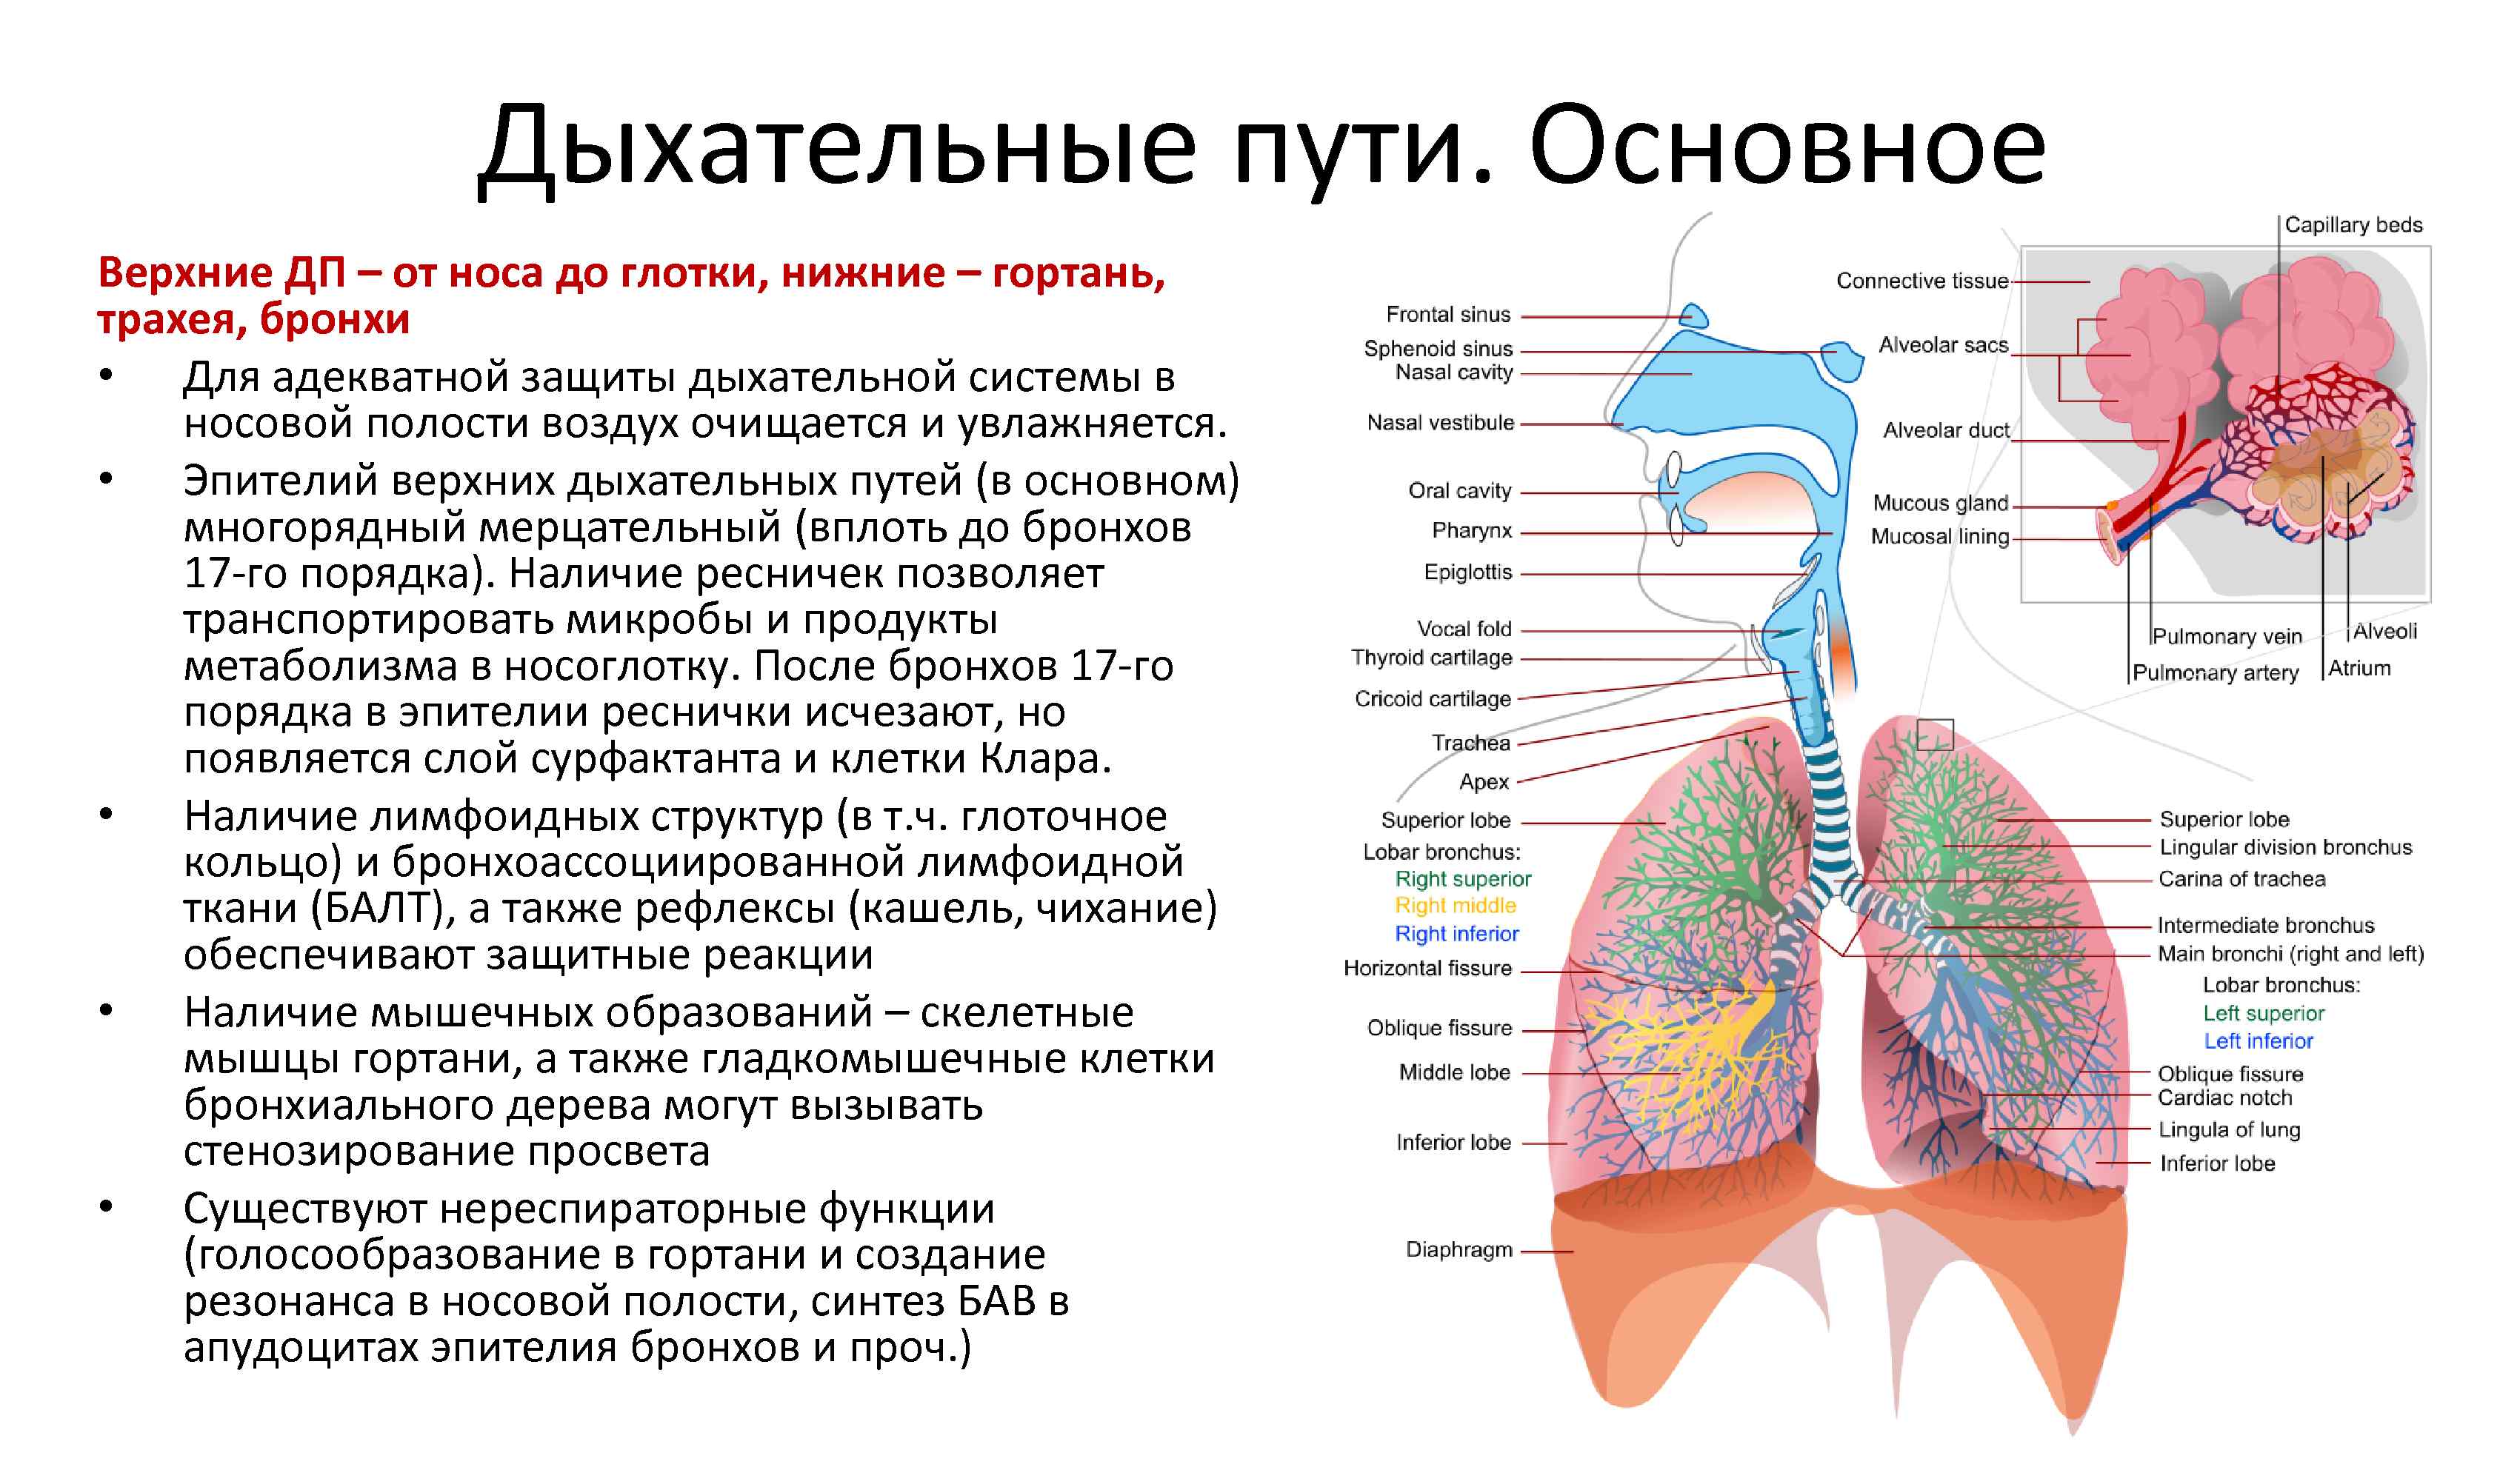 Дыхательная система особенности и функции. Дыхательная система бронхи анатомия человека. Дыхательная система воздухоносные пути и дыхательная часть. Структуры дыхательной системы гортань. Дыхательная система трахея анатомия человека.